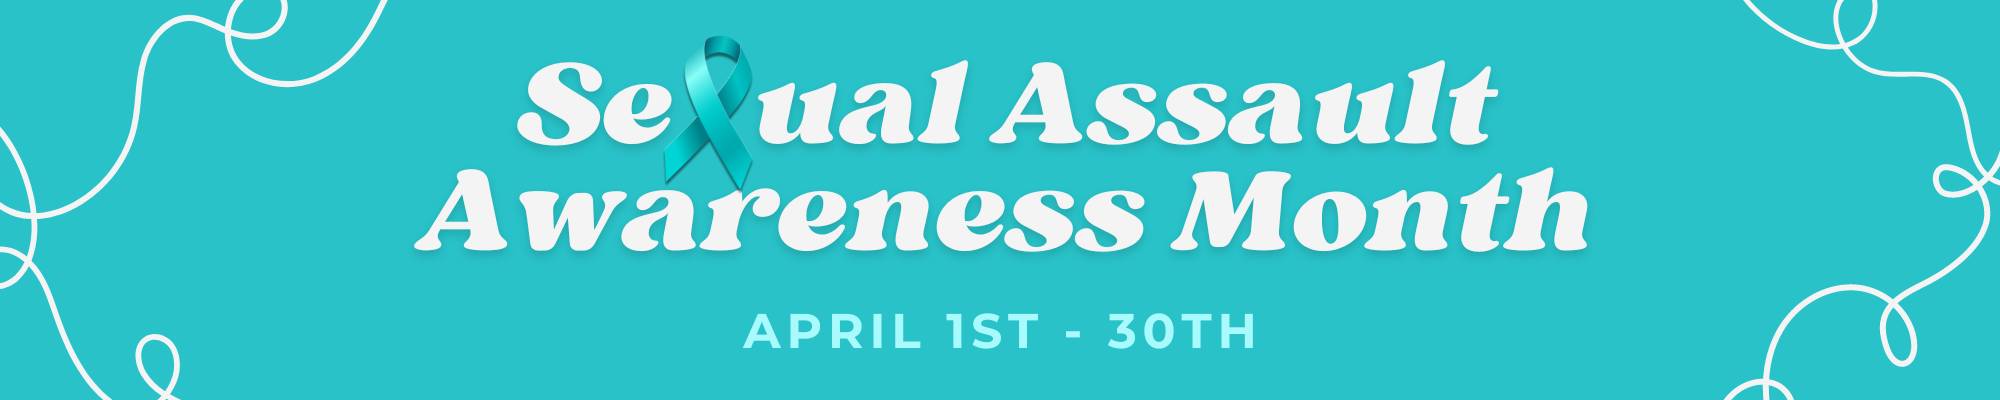 Sexual Assault Awareness Month April 1 - 30